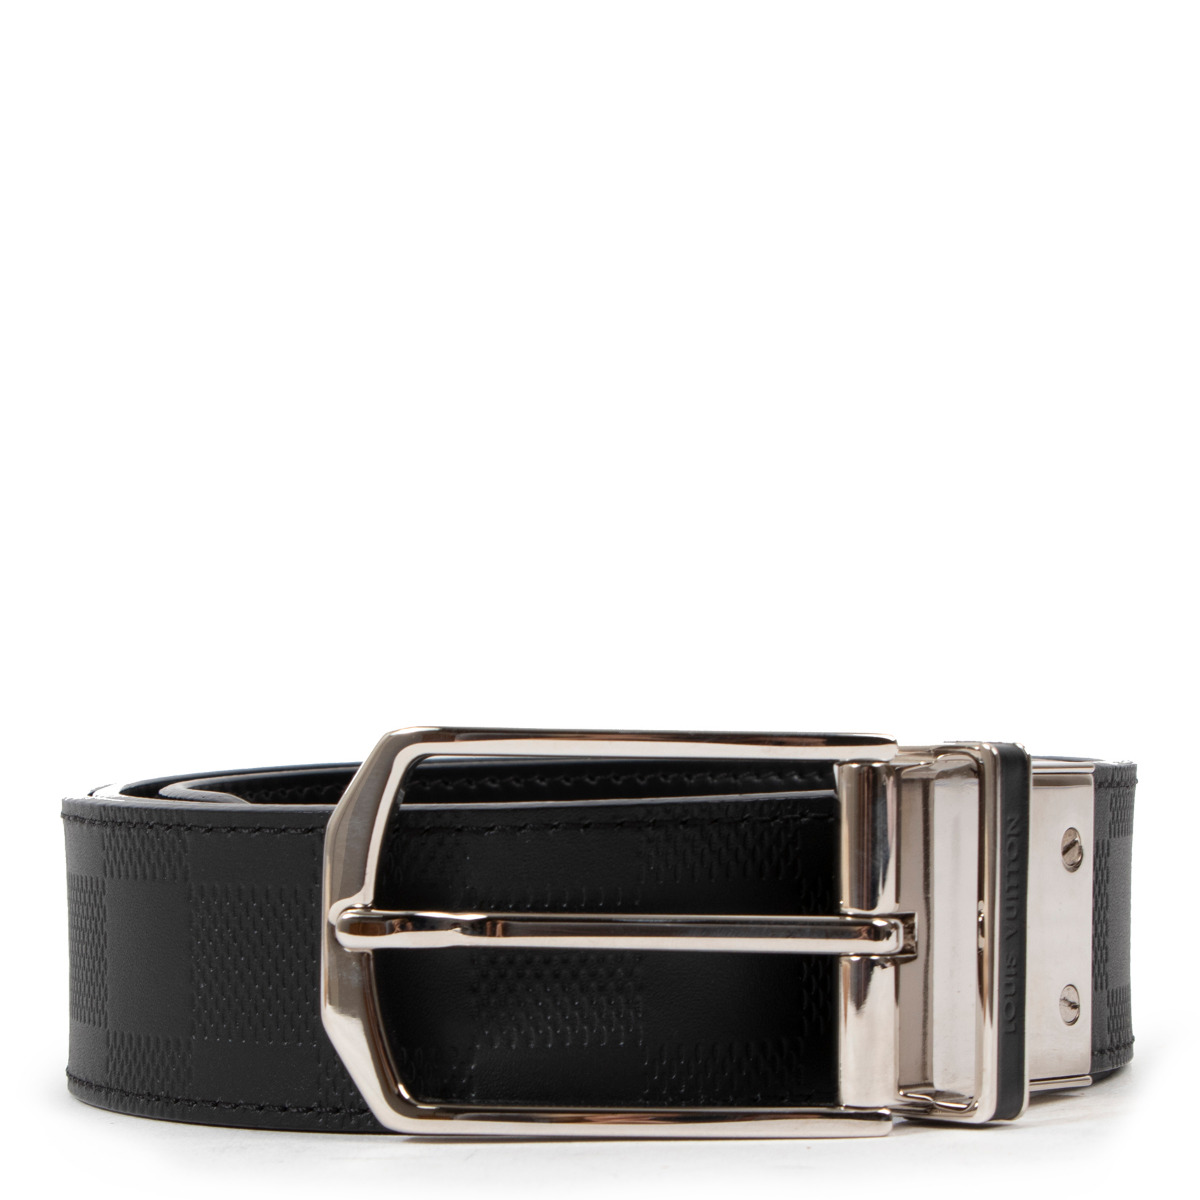 Louis Vuitton Pont Neuf 35mm Belt Black Leather. Size 85 cm